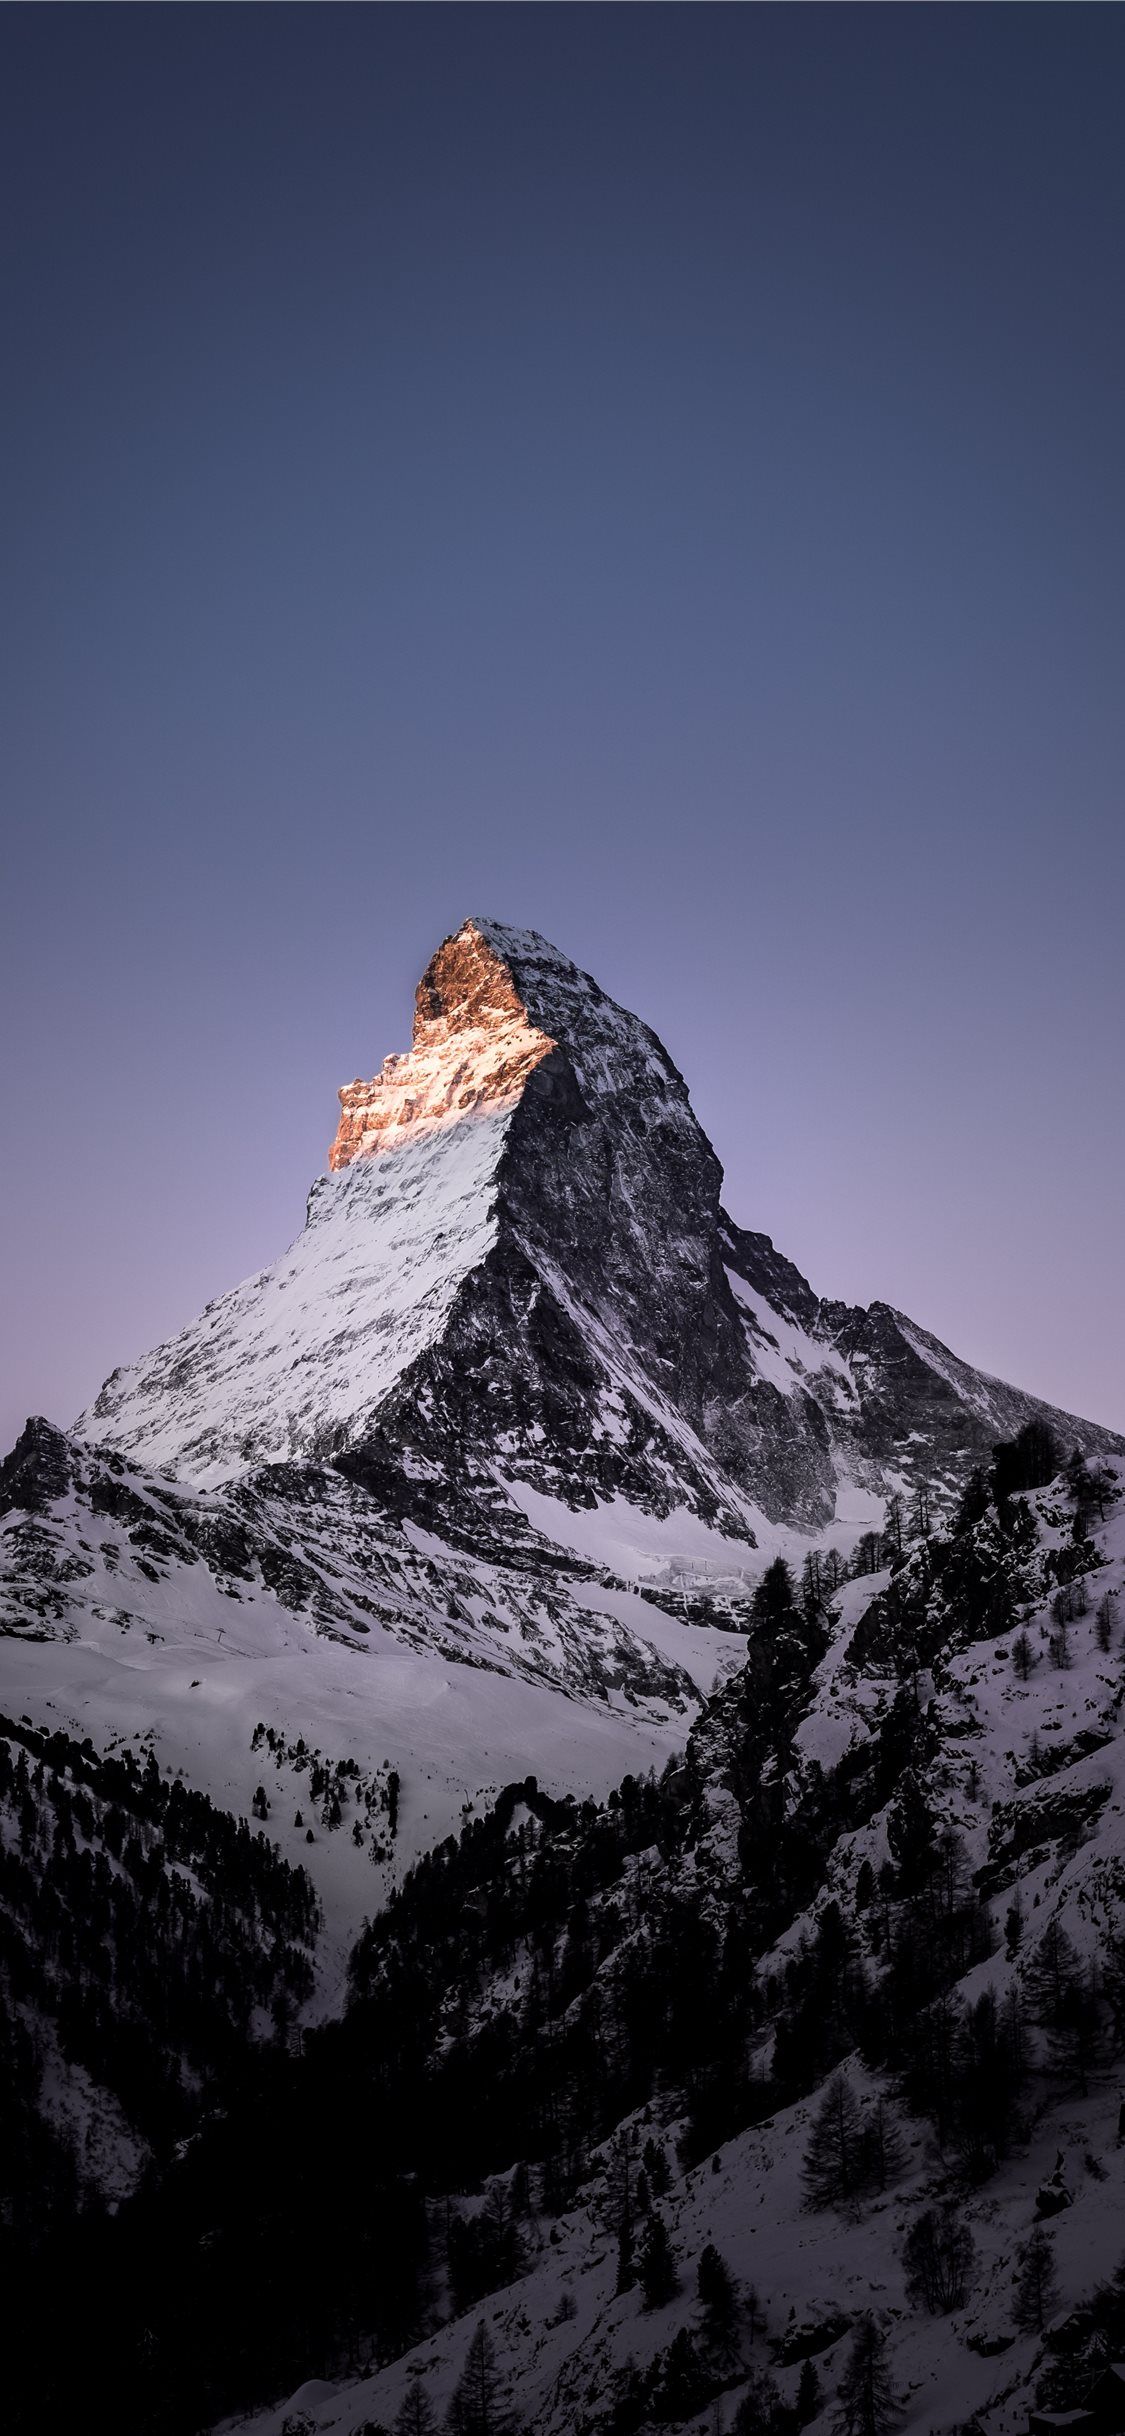 Matterhorn Zermatt Switzerland iPhone Wallpapers Free Download